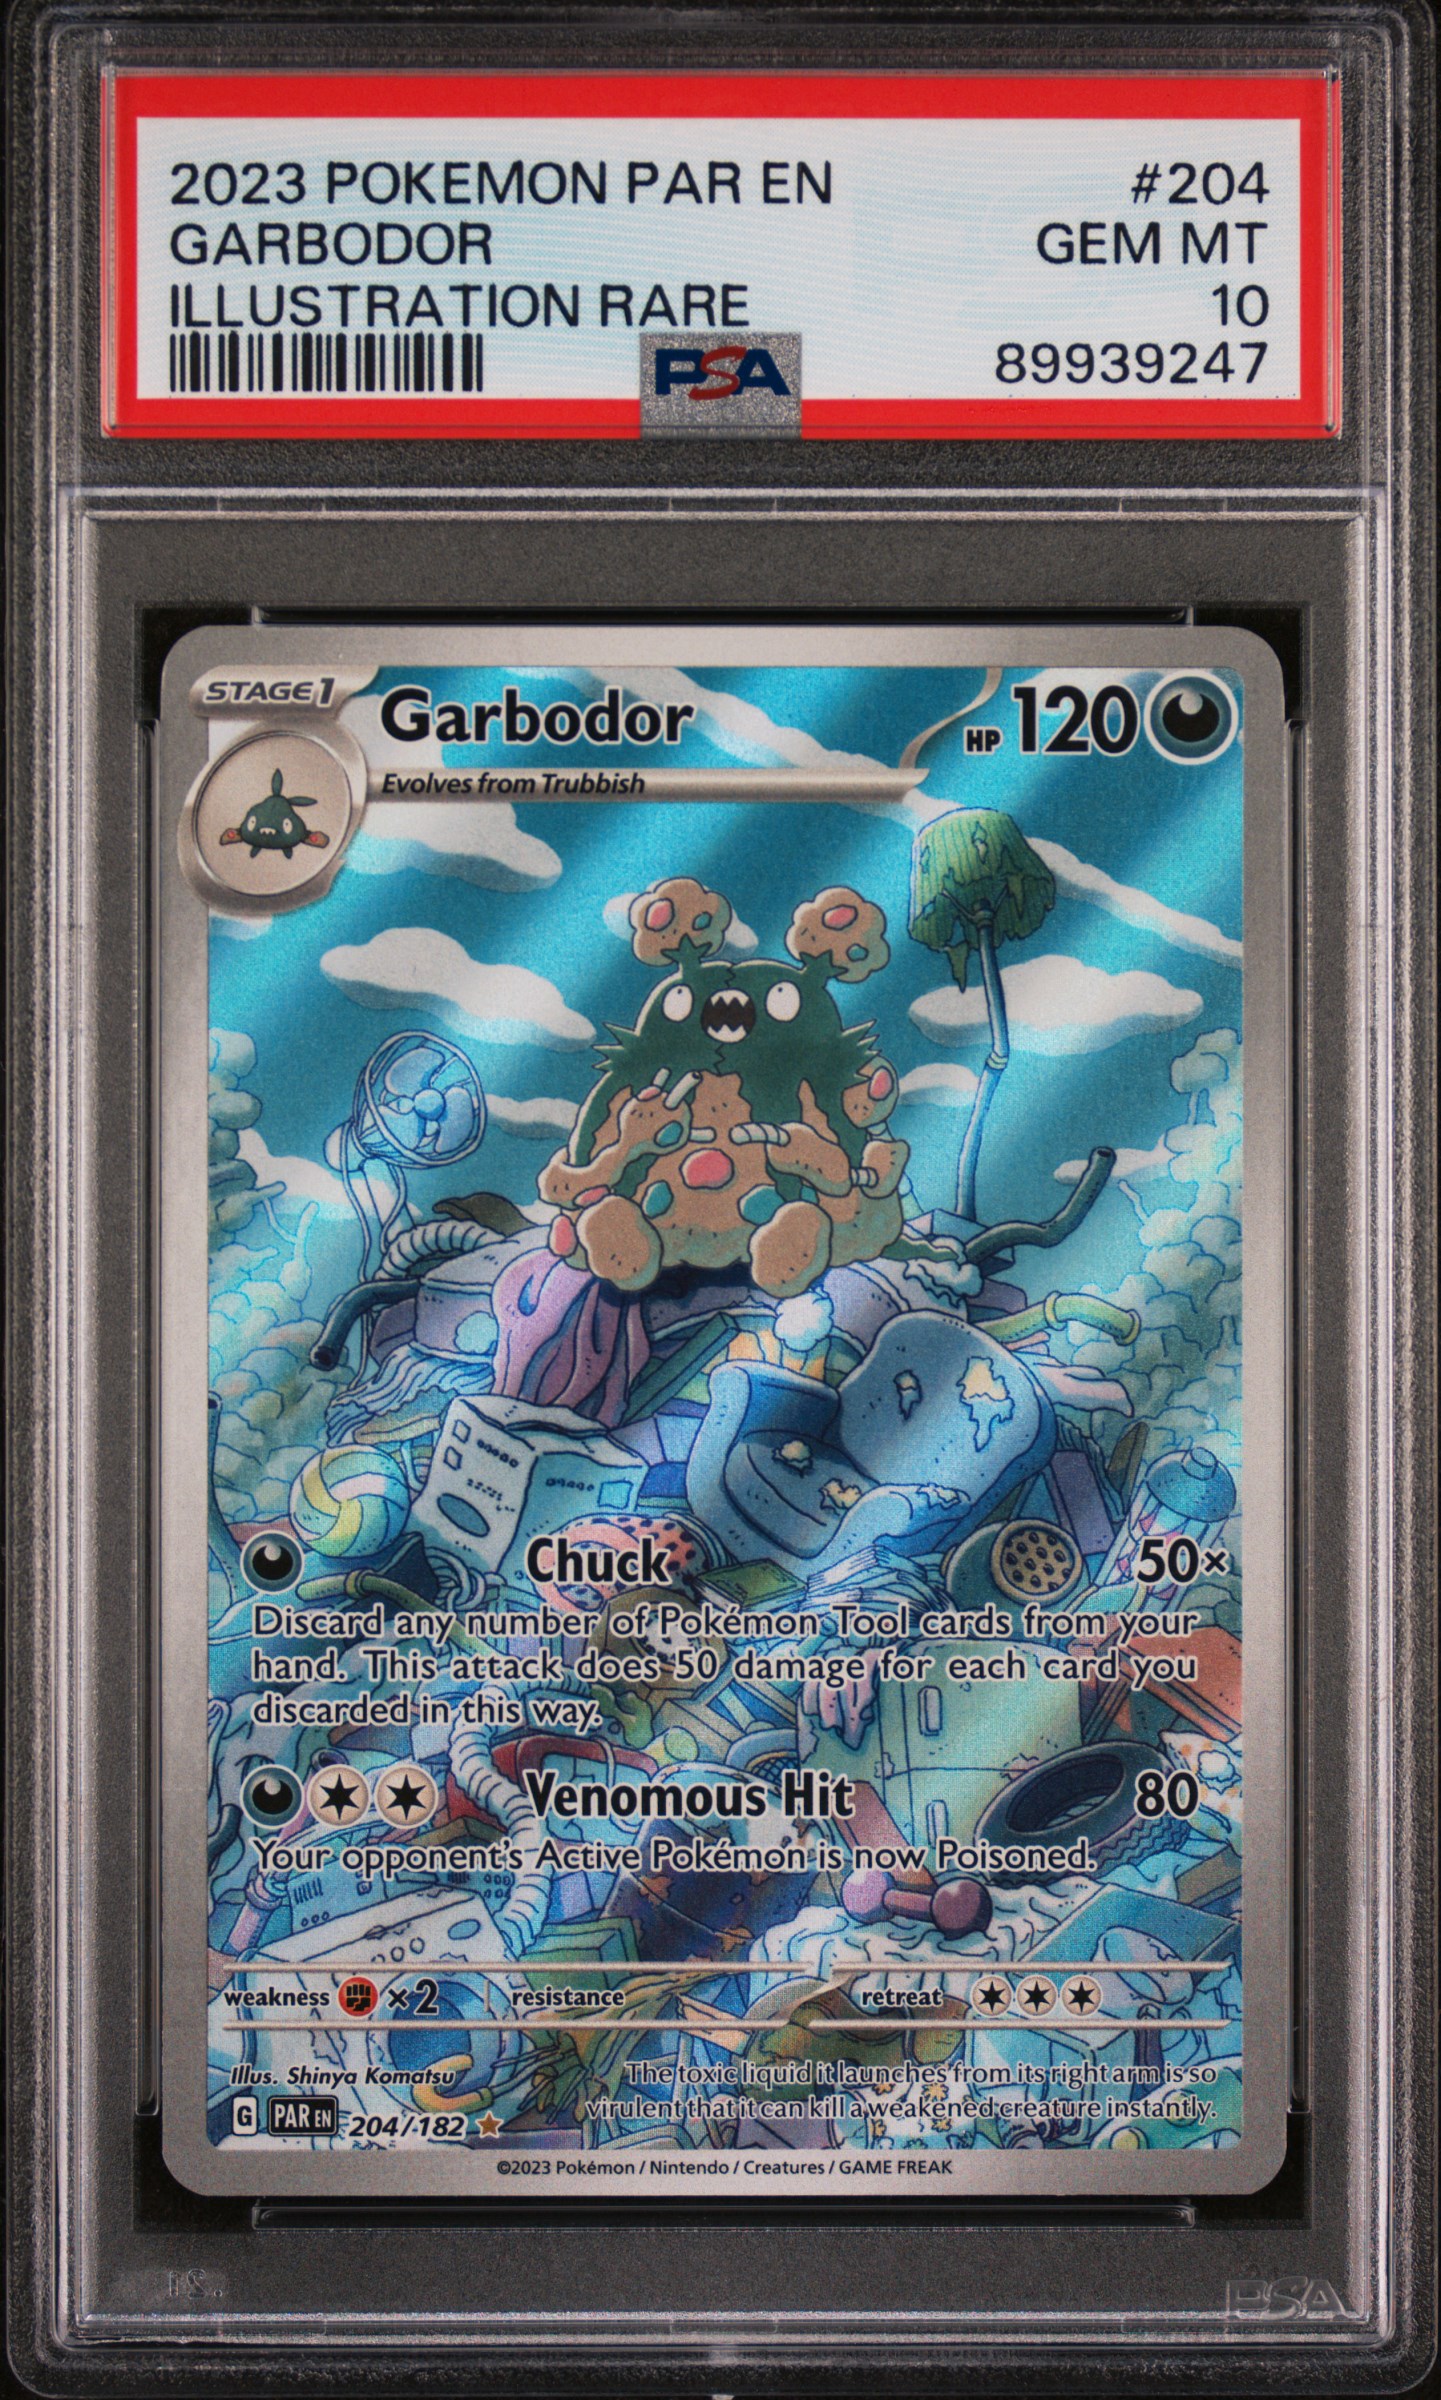 2023 Pokemon Par En-Paradox Rift Illustration Rare 204 Garbodor – PSA GEM MT 10